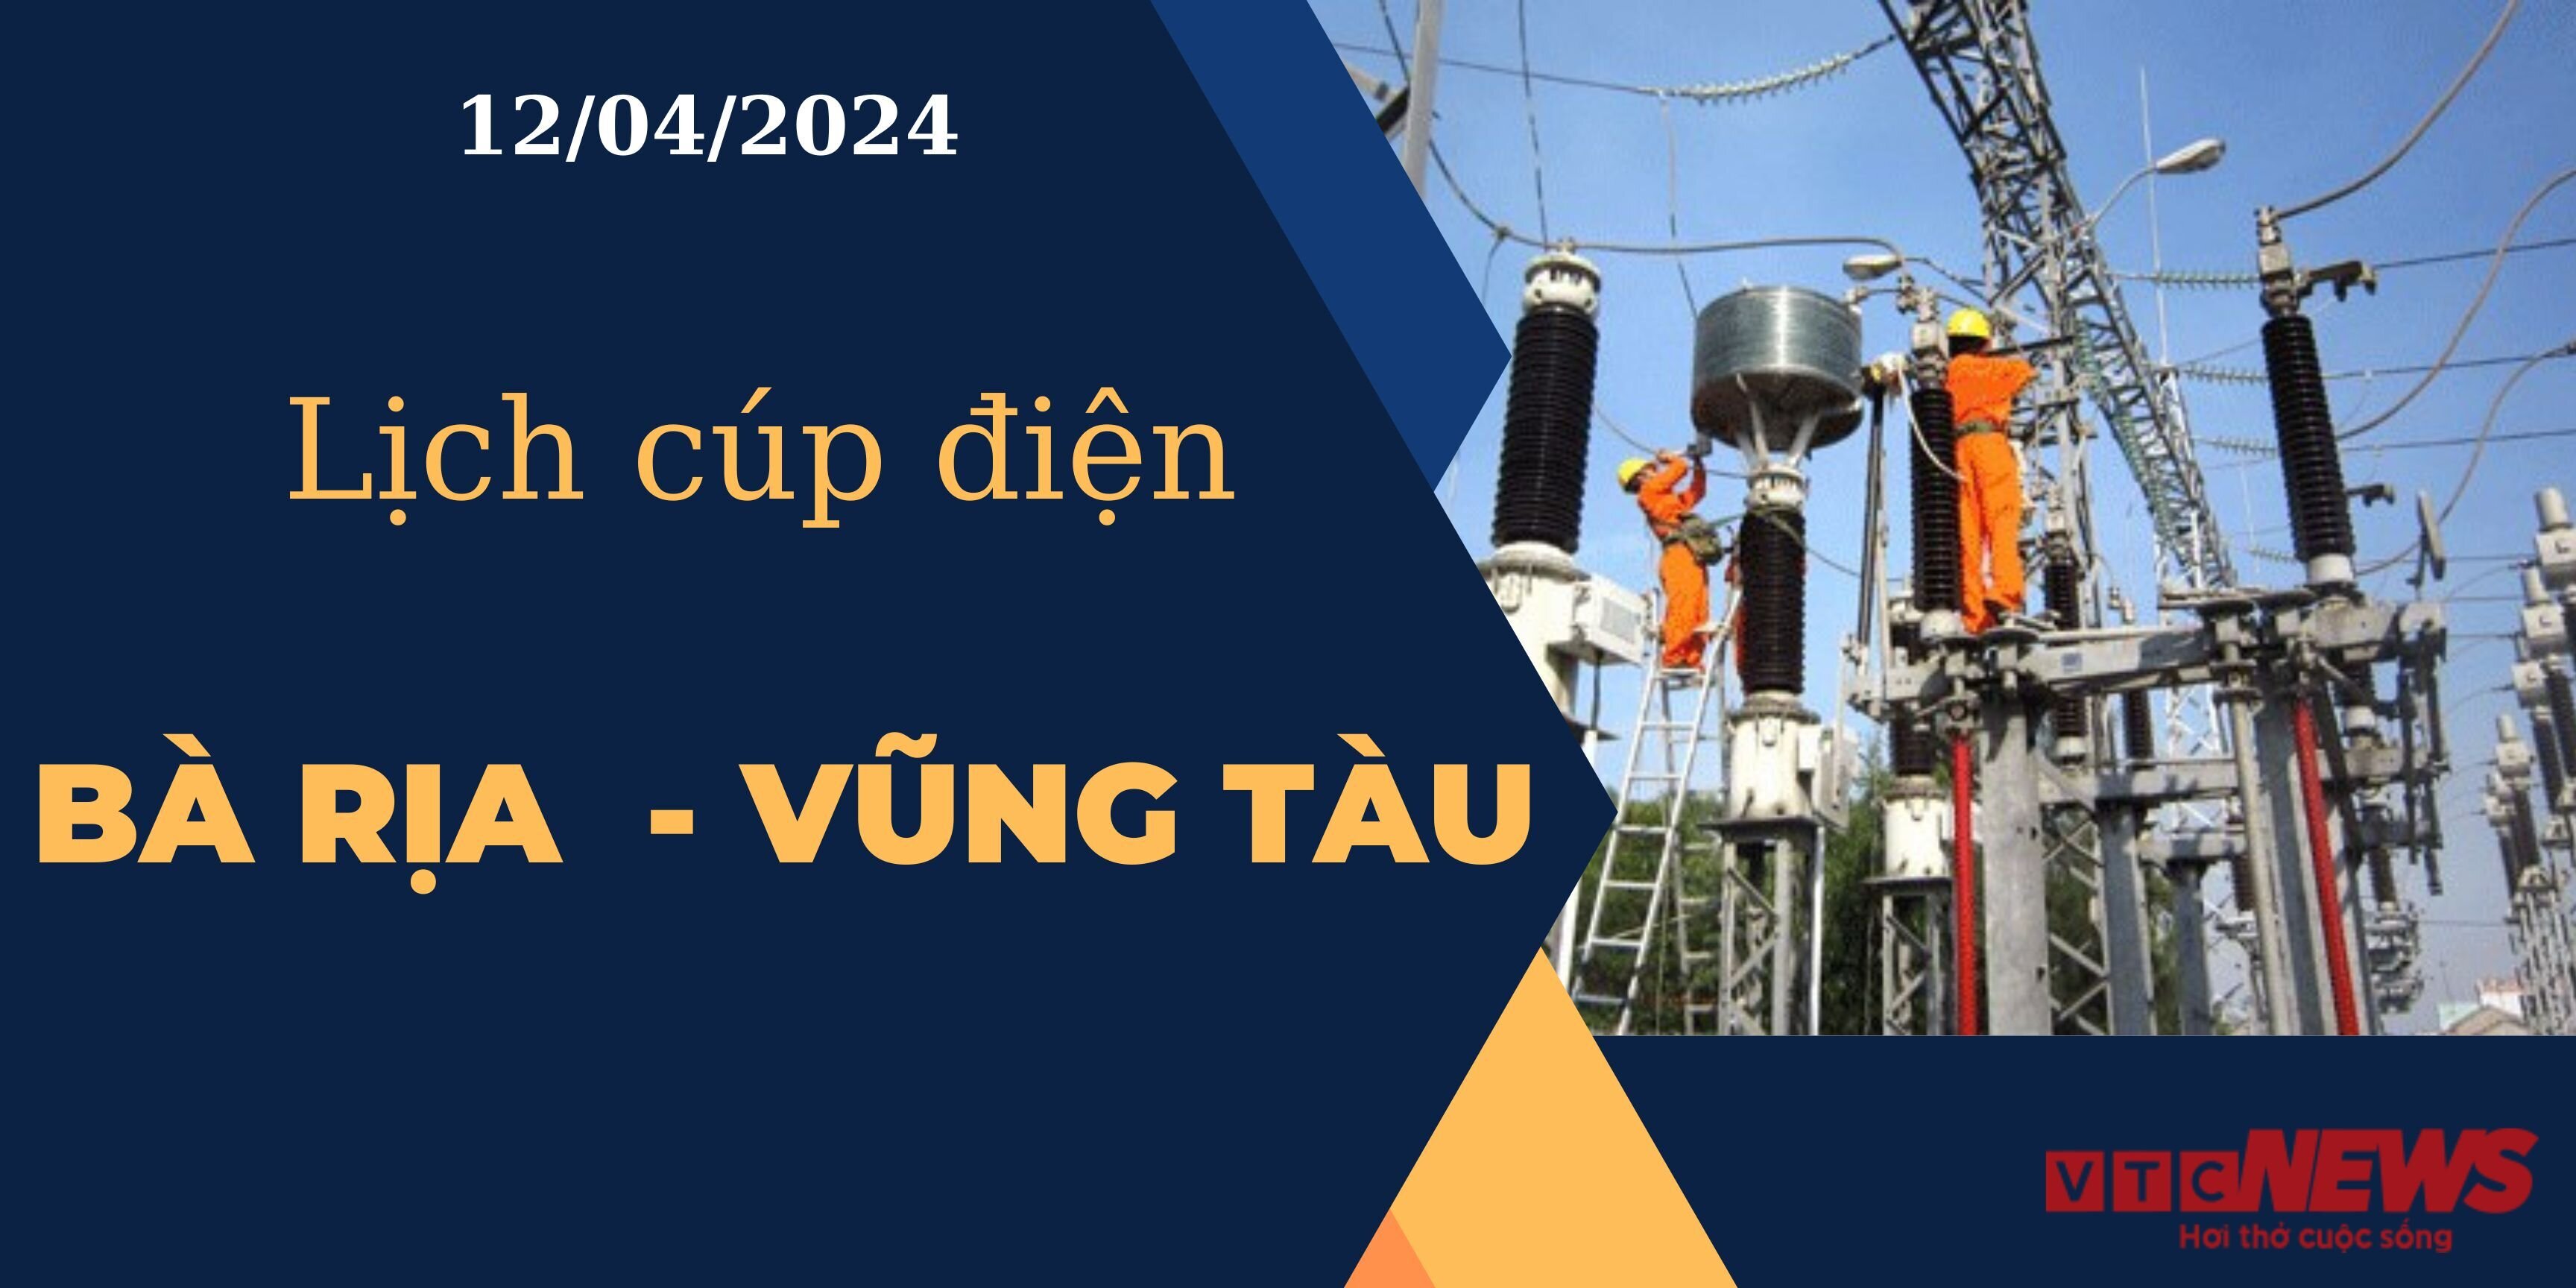 Lịch cúp điện hôm nay ngày 12/04/2024 tại Bà Rịa - Vũng Tàu